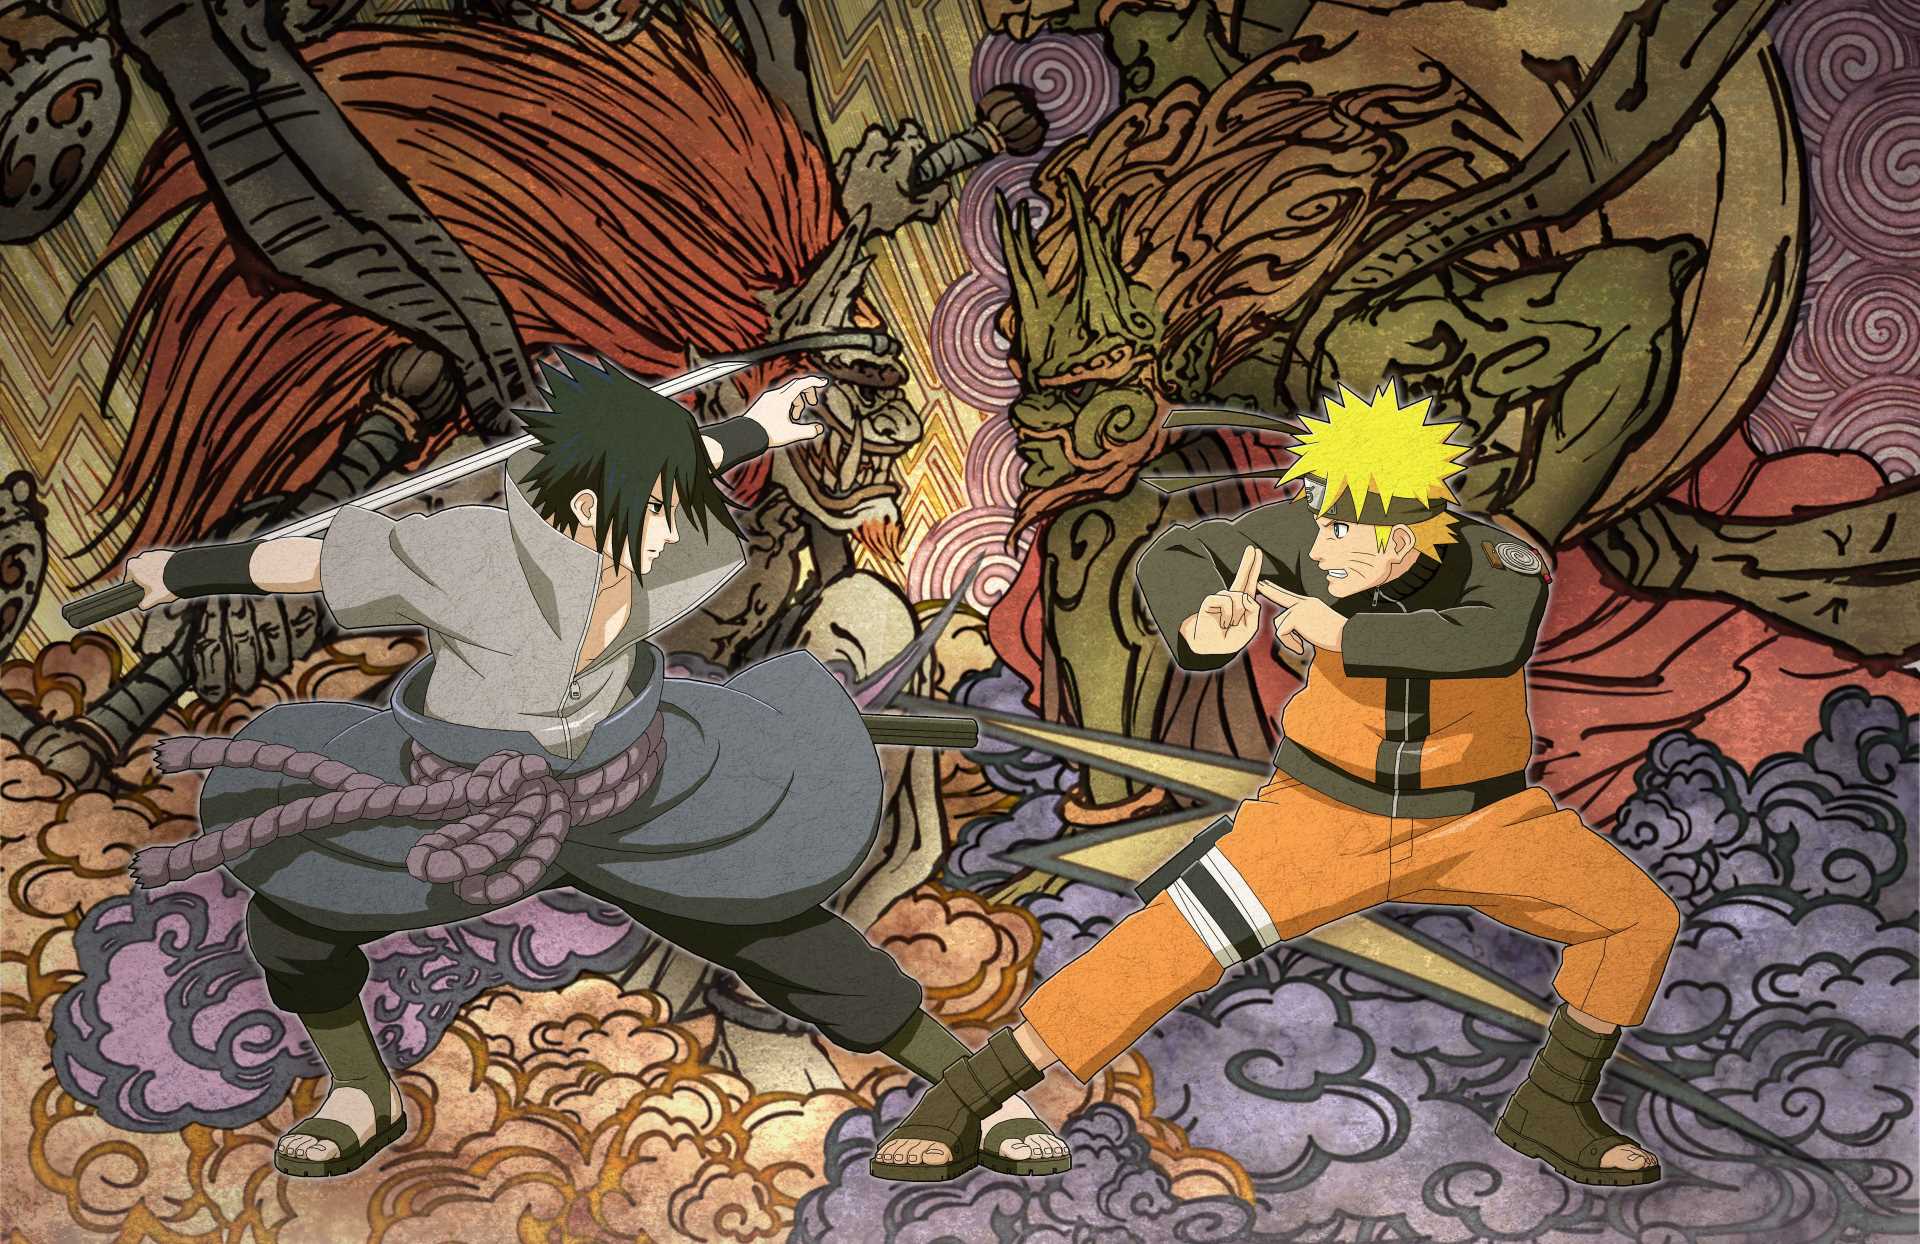 Anime Opening for Shinobi Story - Naruto Inspired MMO 